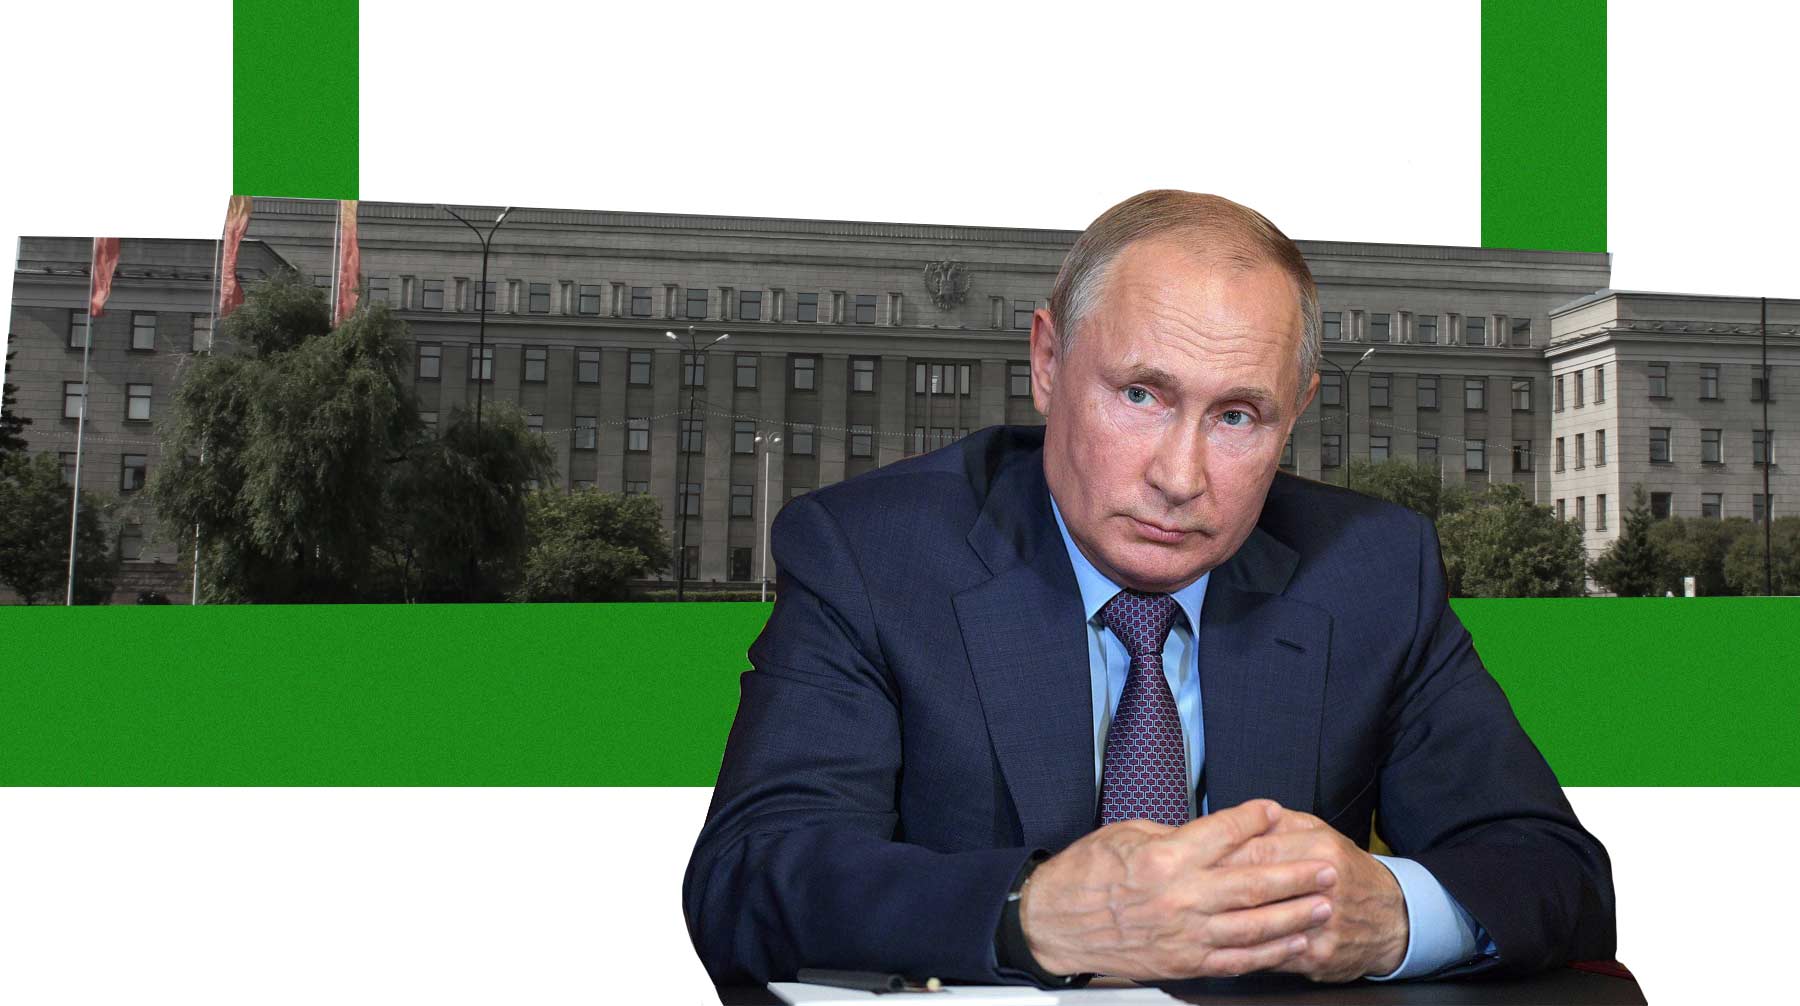 Президент России также осудил Сбербанк за отсутствие желания помочь пострадавшим жителям региона в реструктуризации долгов Коллаж: © Daily Storm